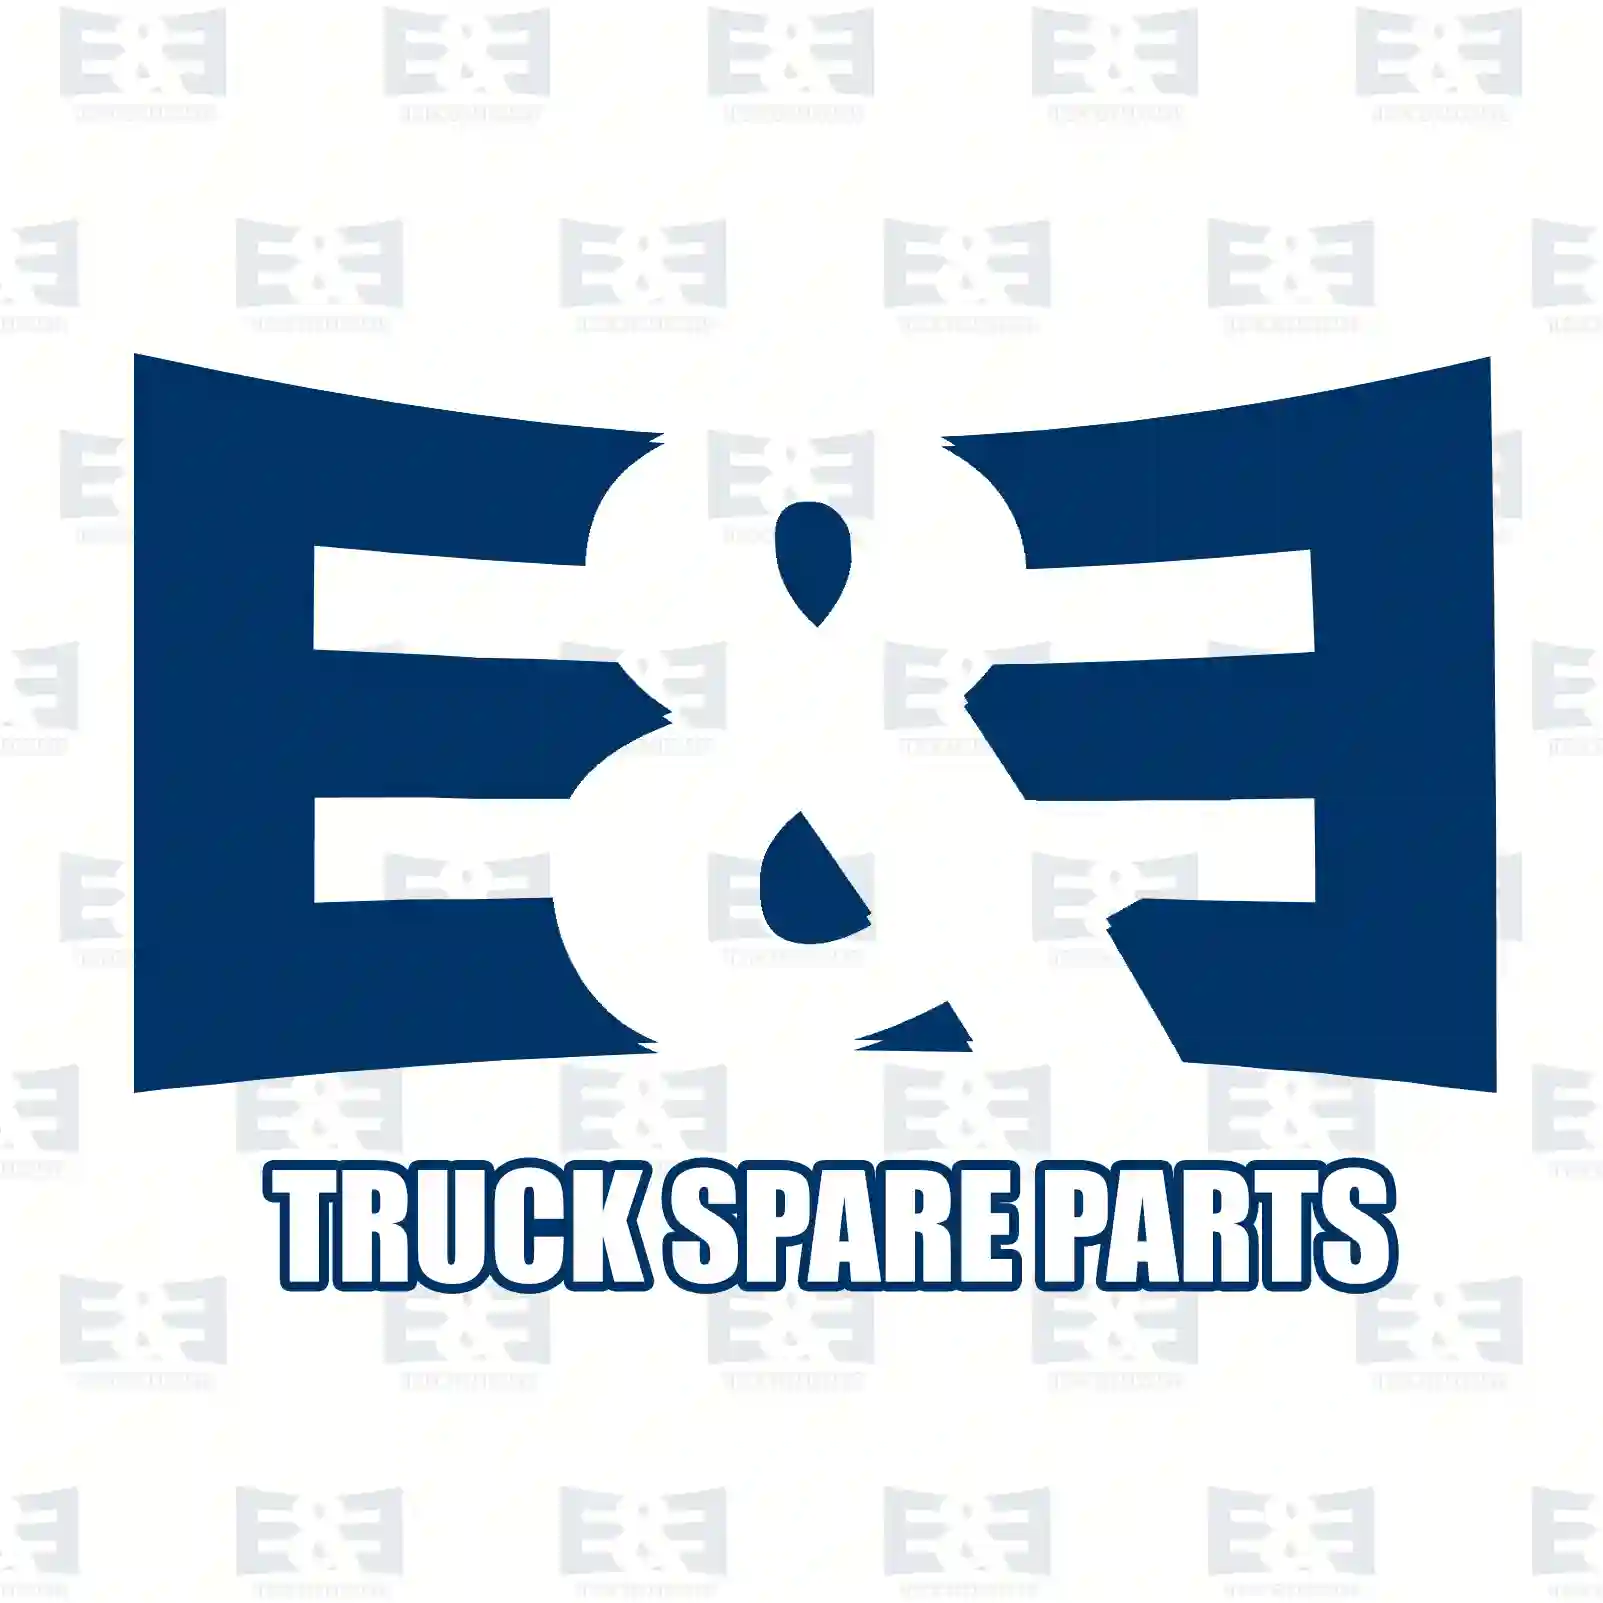 Propeller shaft, 2E2276729, 500391612 ||  2E2276729 E&E Truck Spare Parts | Truck Spare Parts, Auotomotive Spare Parts Propeller shaft, 2E2276729, 500391612 ||  2E2276729 E&E Truck Spare Parts | Truck Spare Parts, Auotomotive Spare Parts